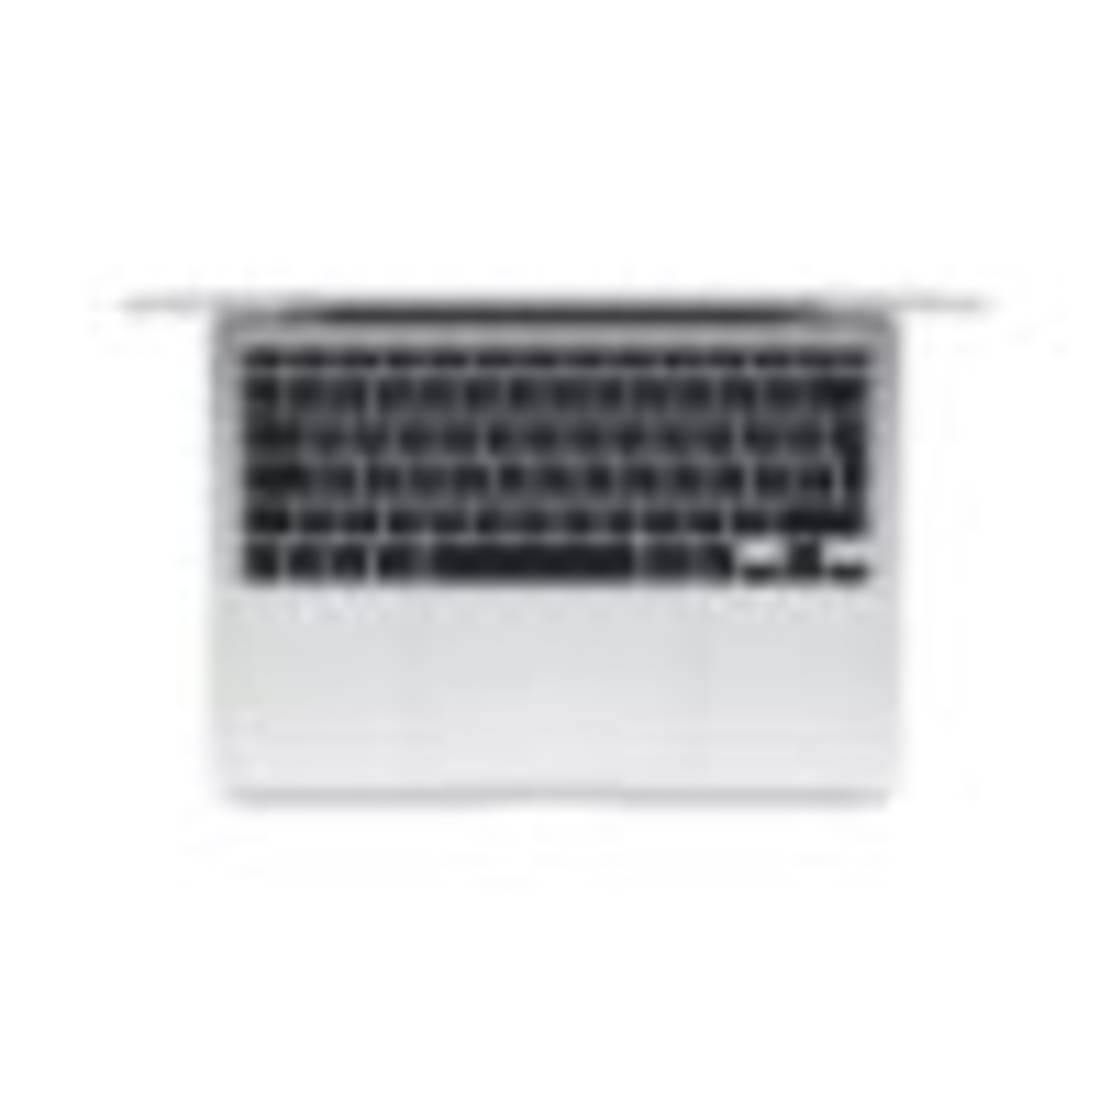 נייד Apple MacBook Air 13.3/Apple M1 Chip/8GB/256GB/macOS/1Y